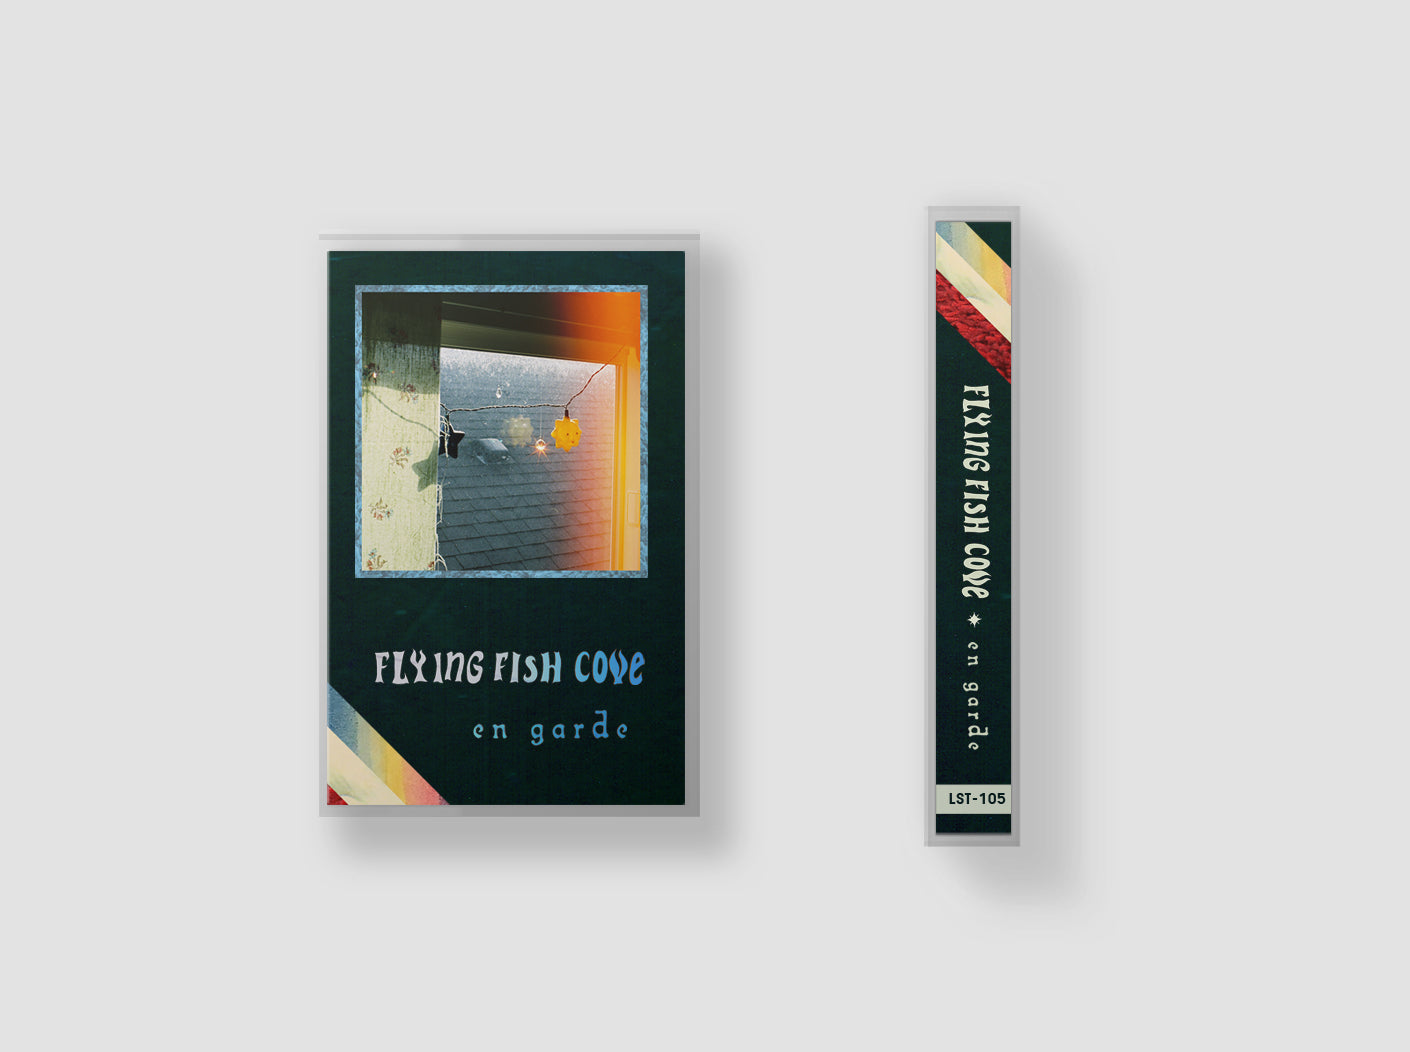 FLYING FISH COVE "En Garde" cassette tape